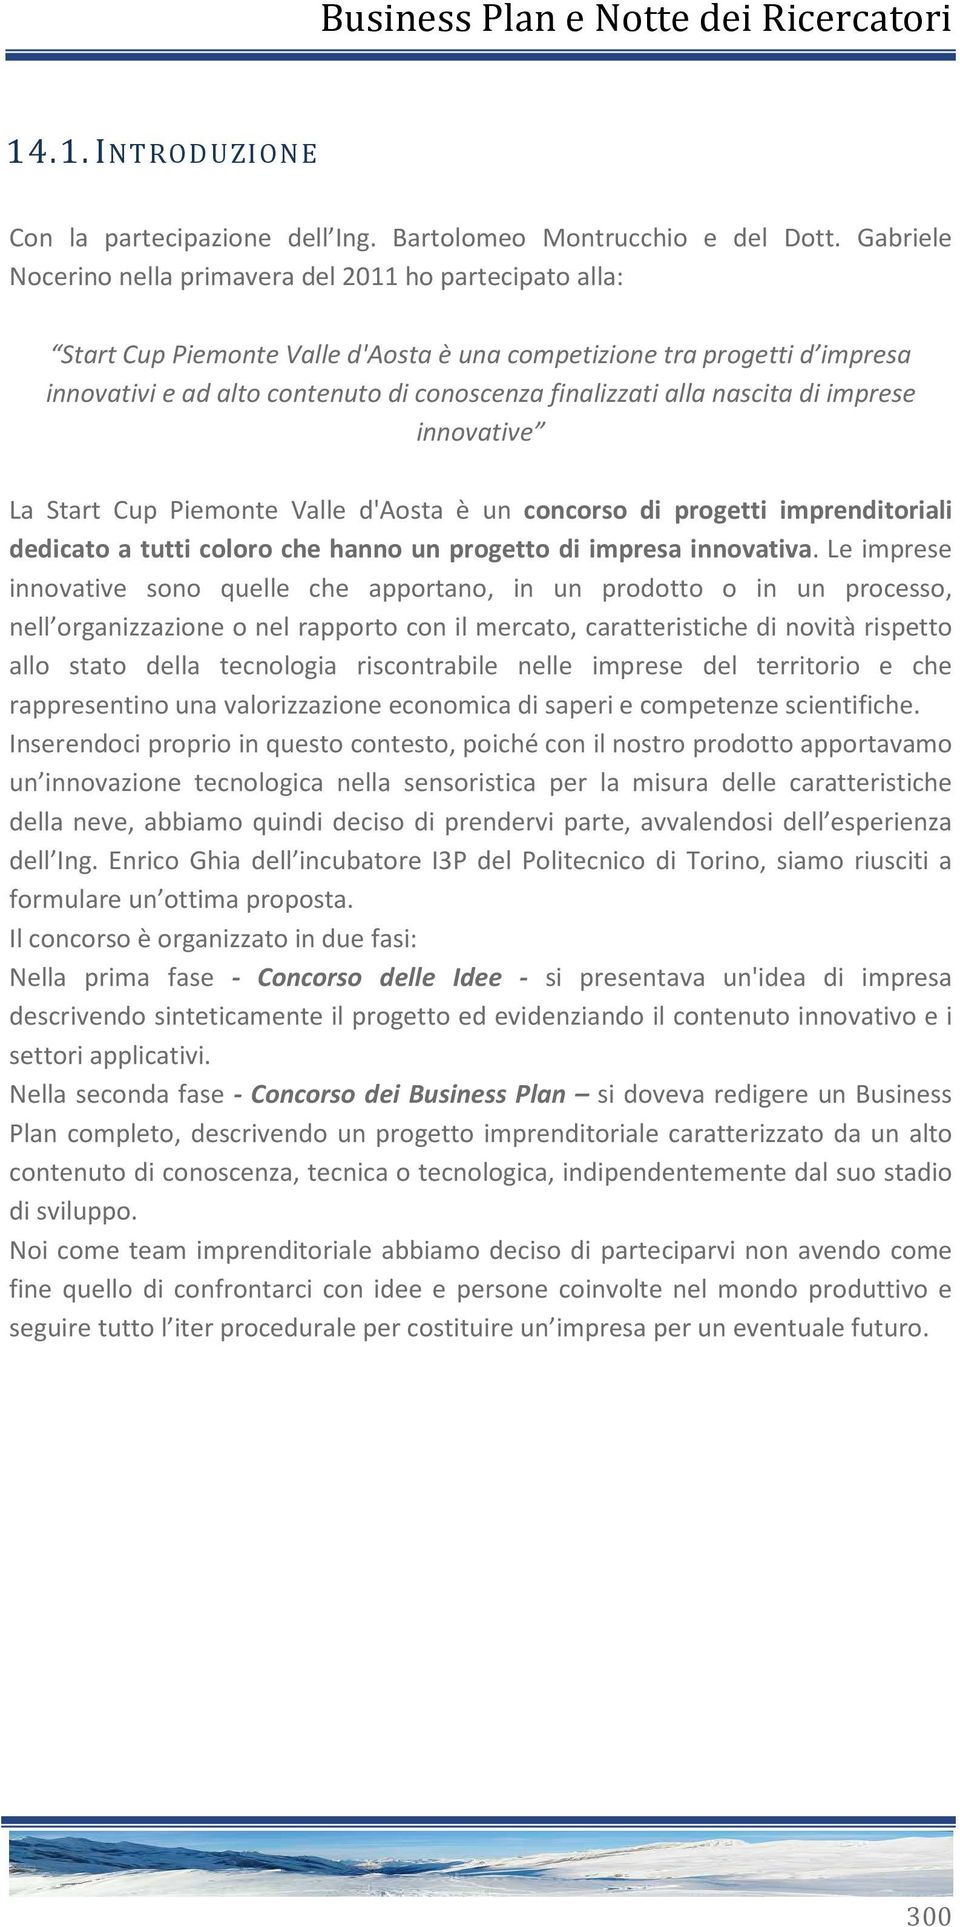 alla nascita di imprese innovative La Start Cup Piemonte Valle d'aosta è un concorso di progetti imprenditoriali dedicato a tutti coloro che hanno un progetto di impresa innovativa.